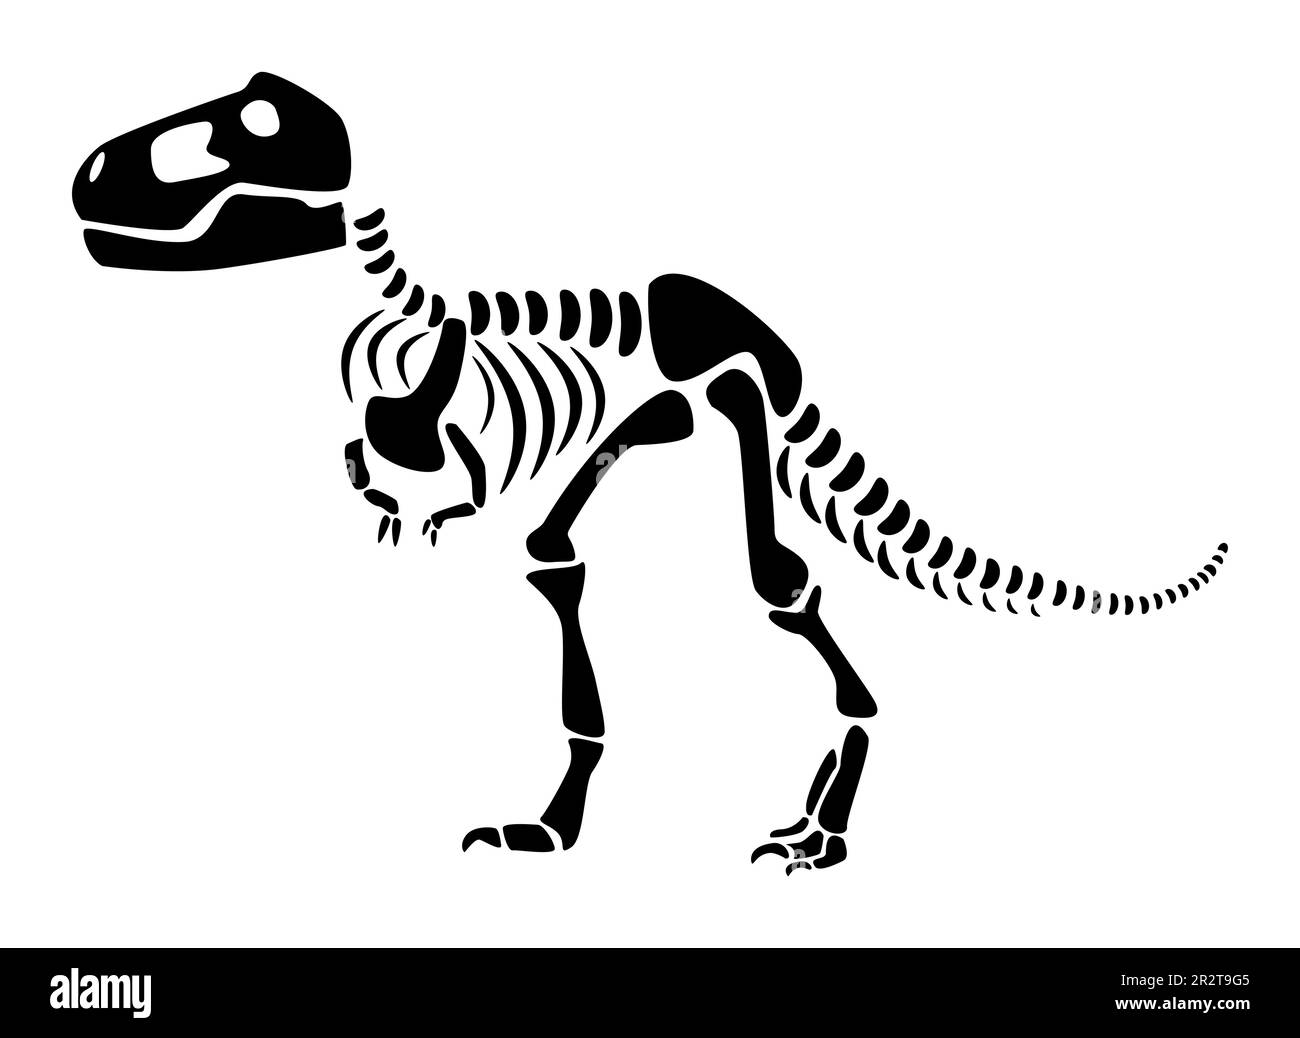 Ilustração da silhueta preto e branco do tyrannosaurus rex trex